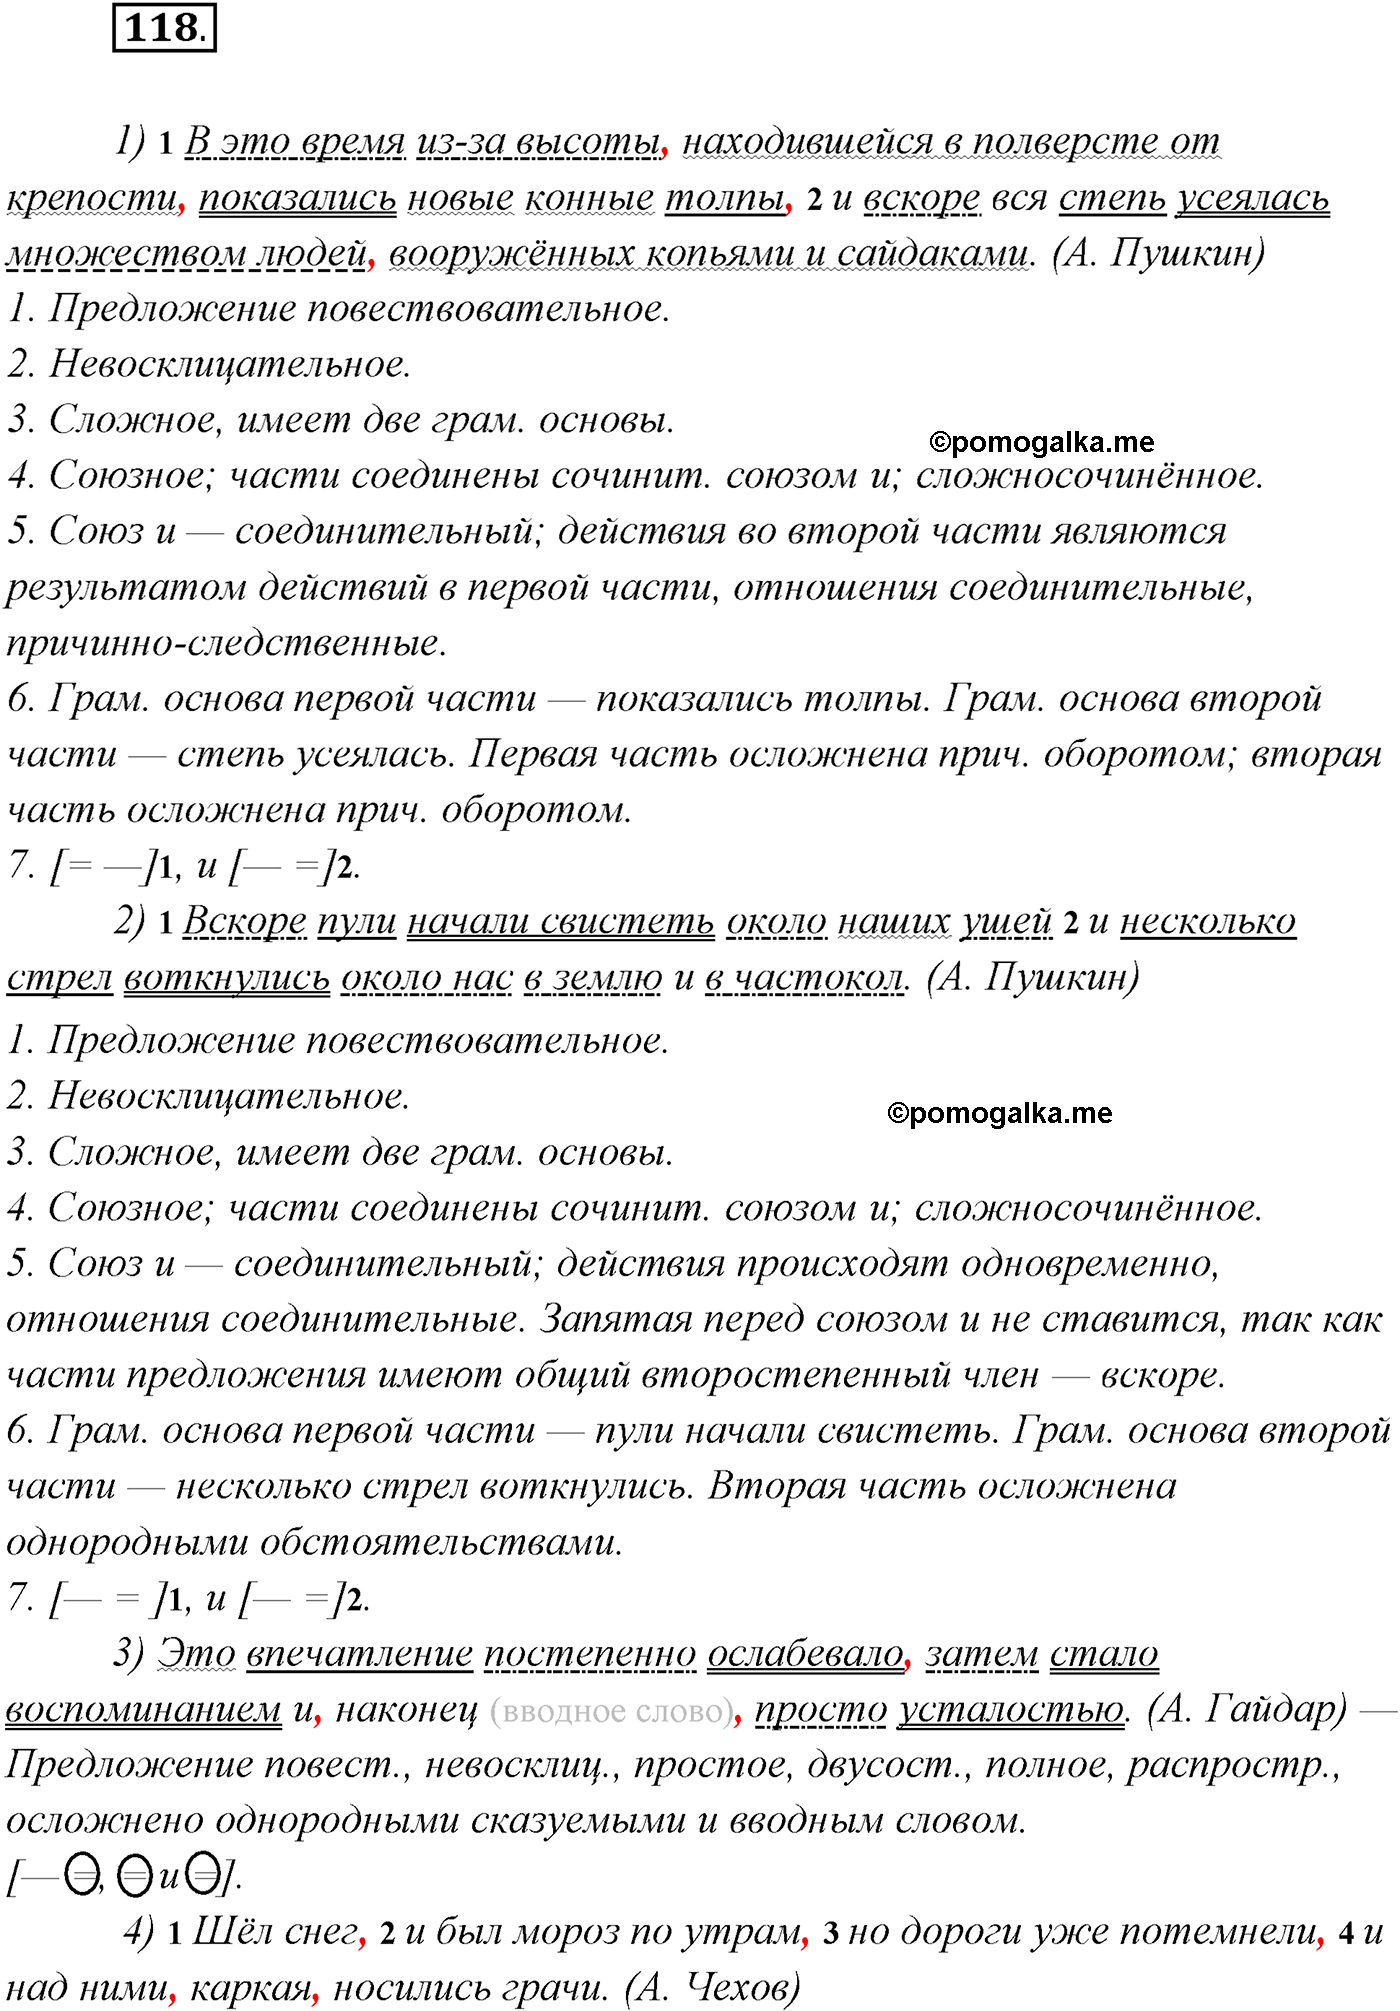 упражнение №118 русский язык 9 класс Рыбченкова, Александрова